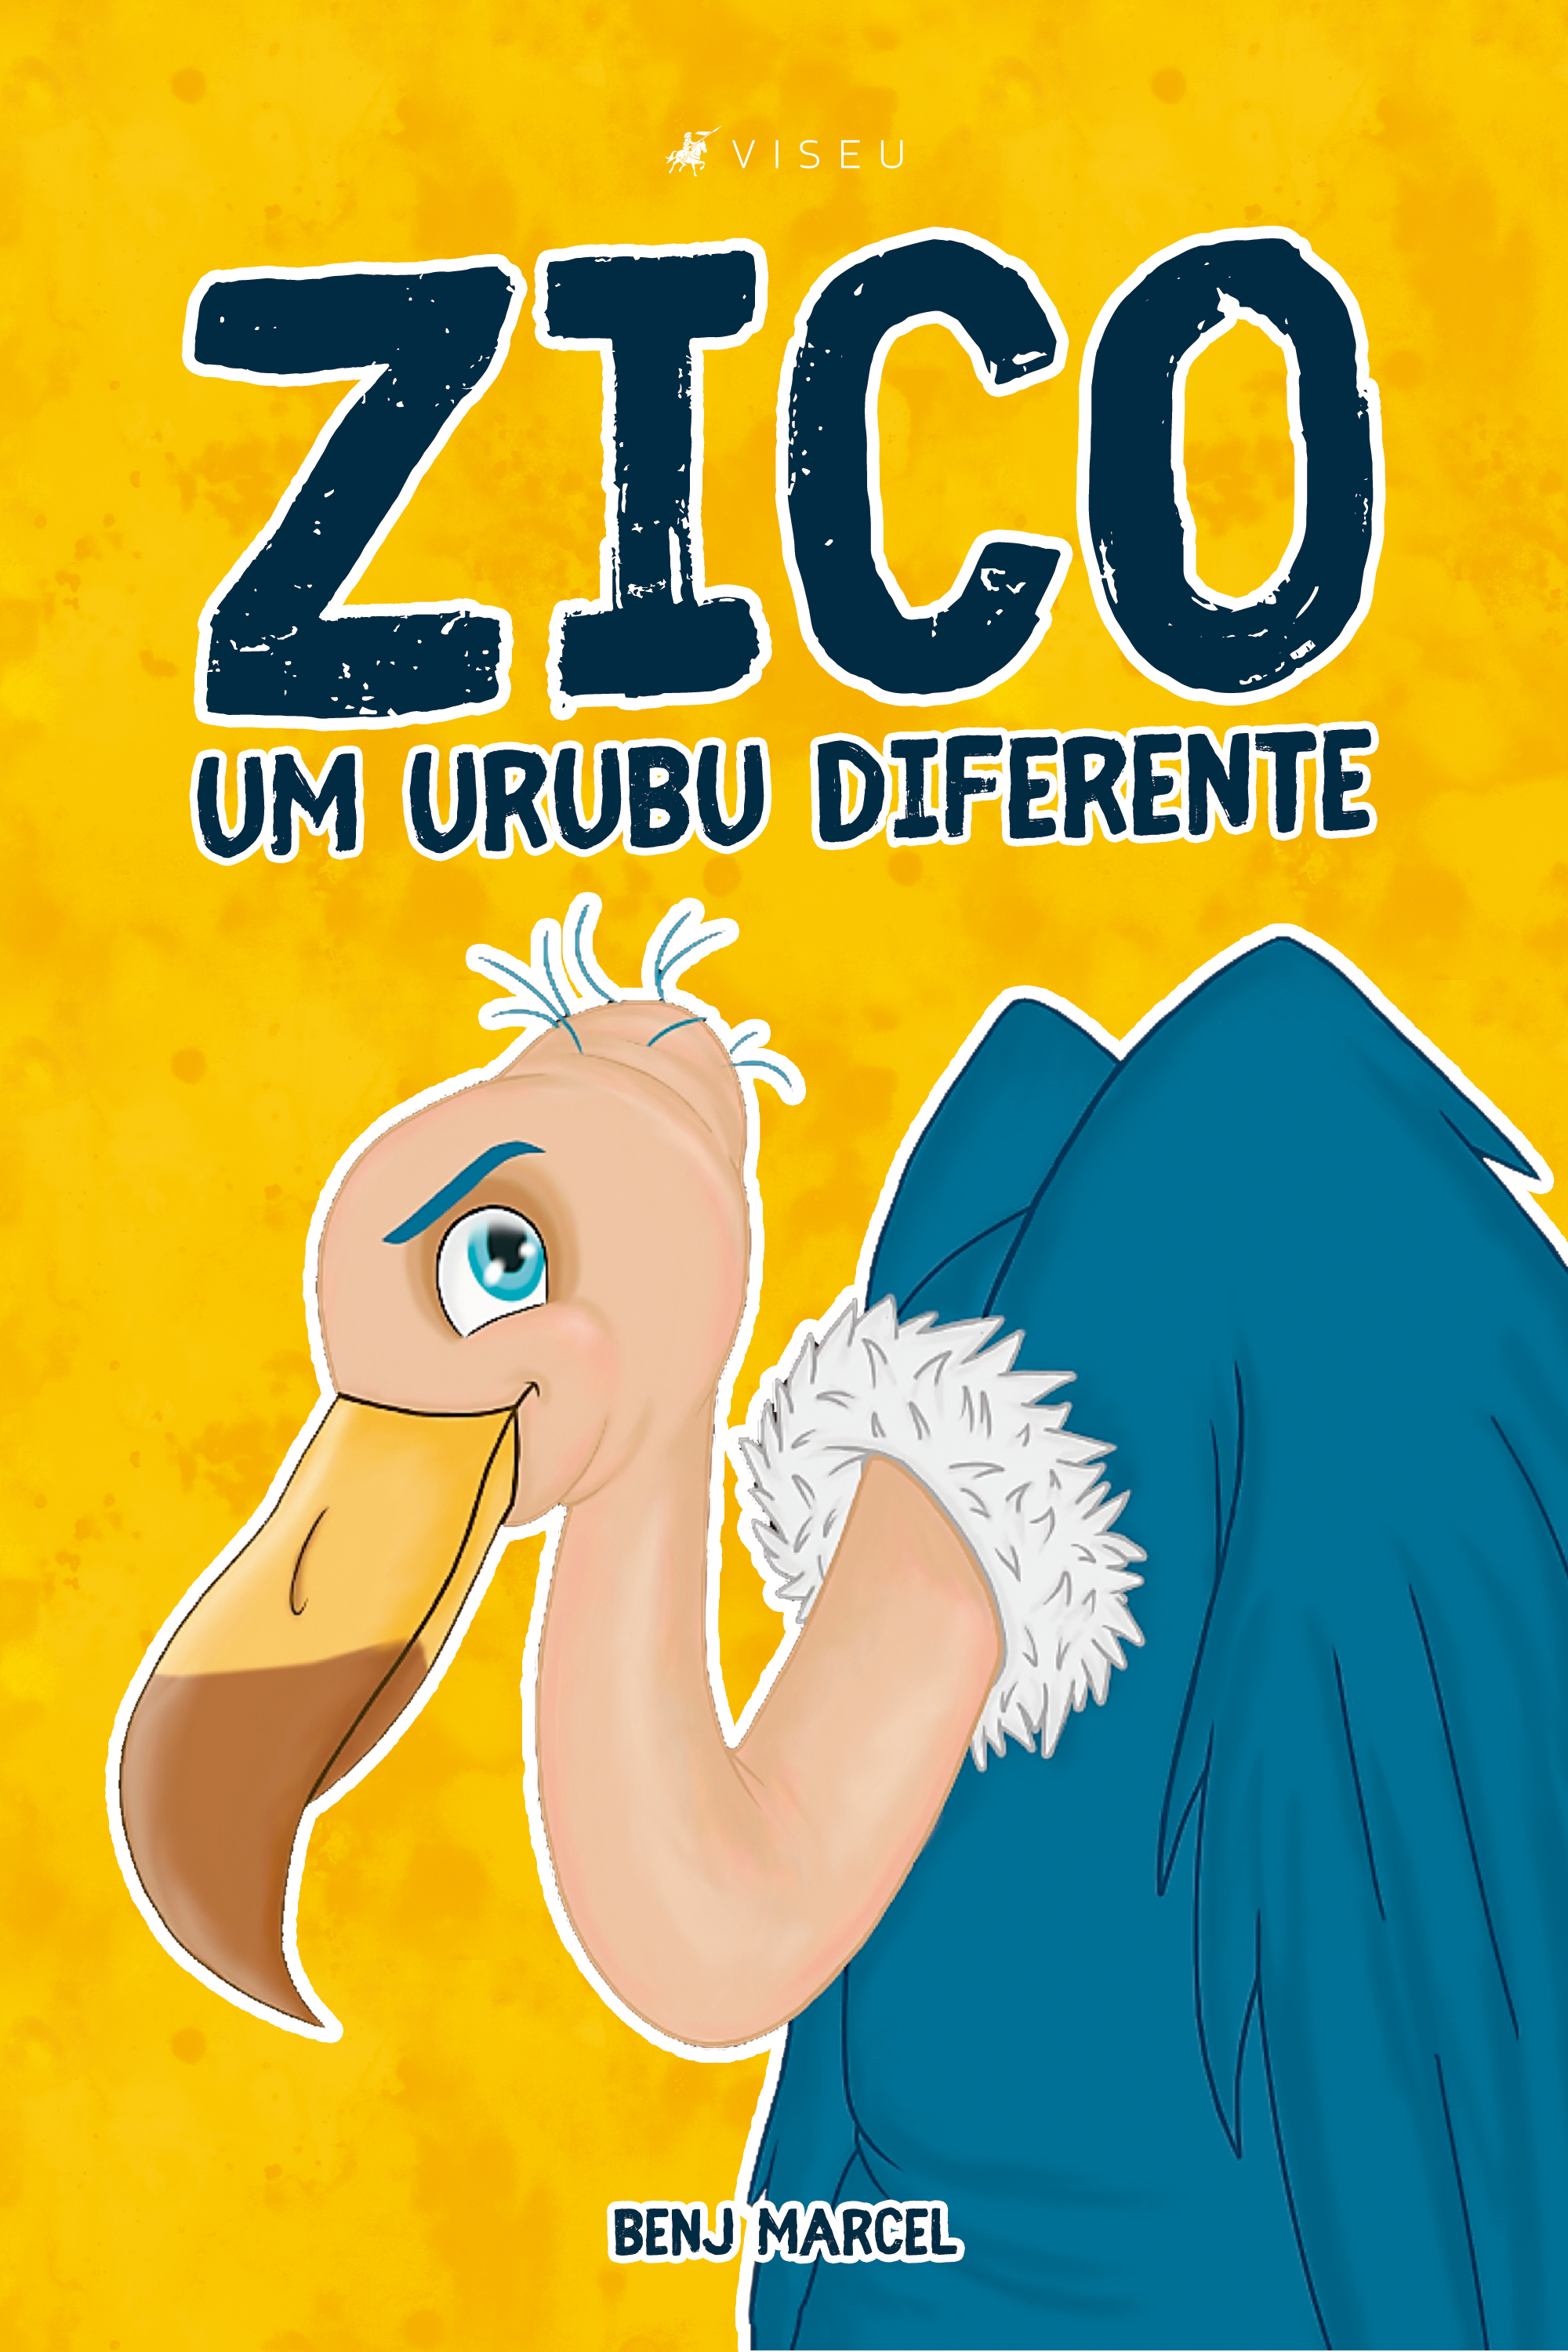 Zico, Um urubu diferente